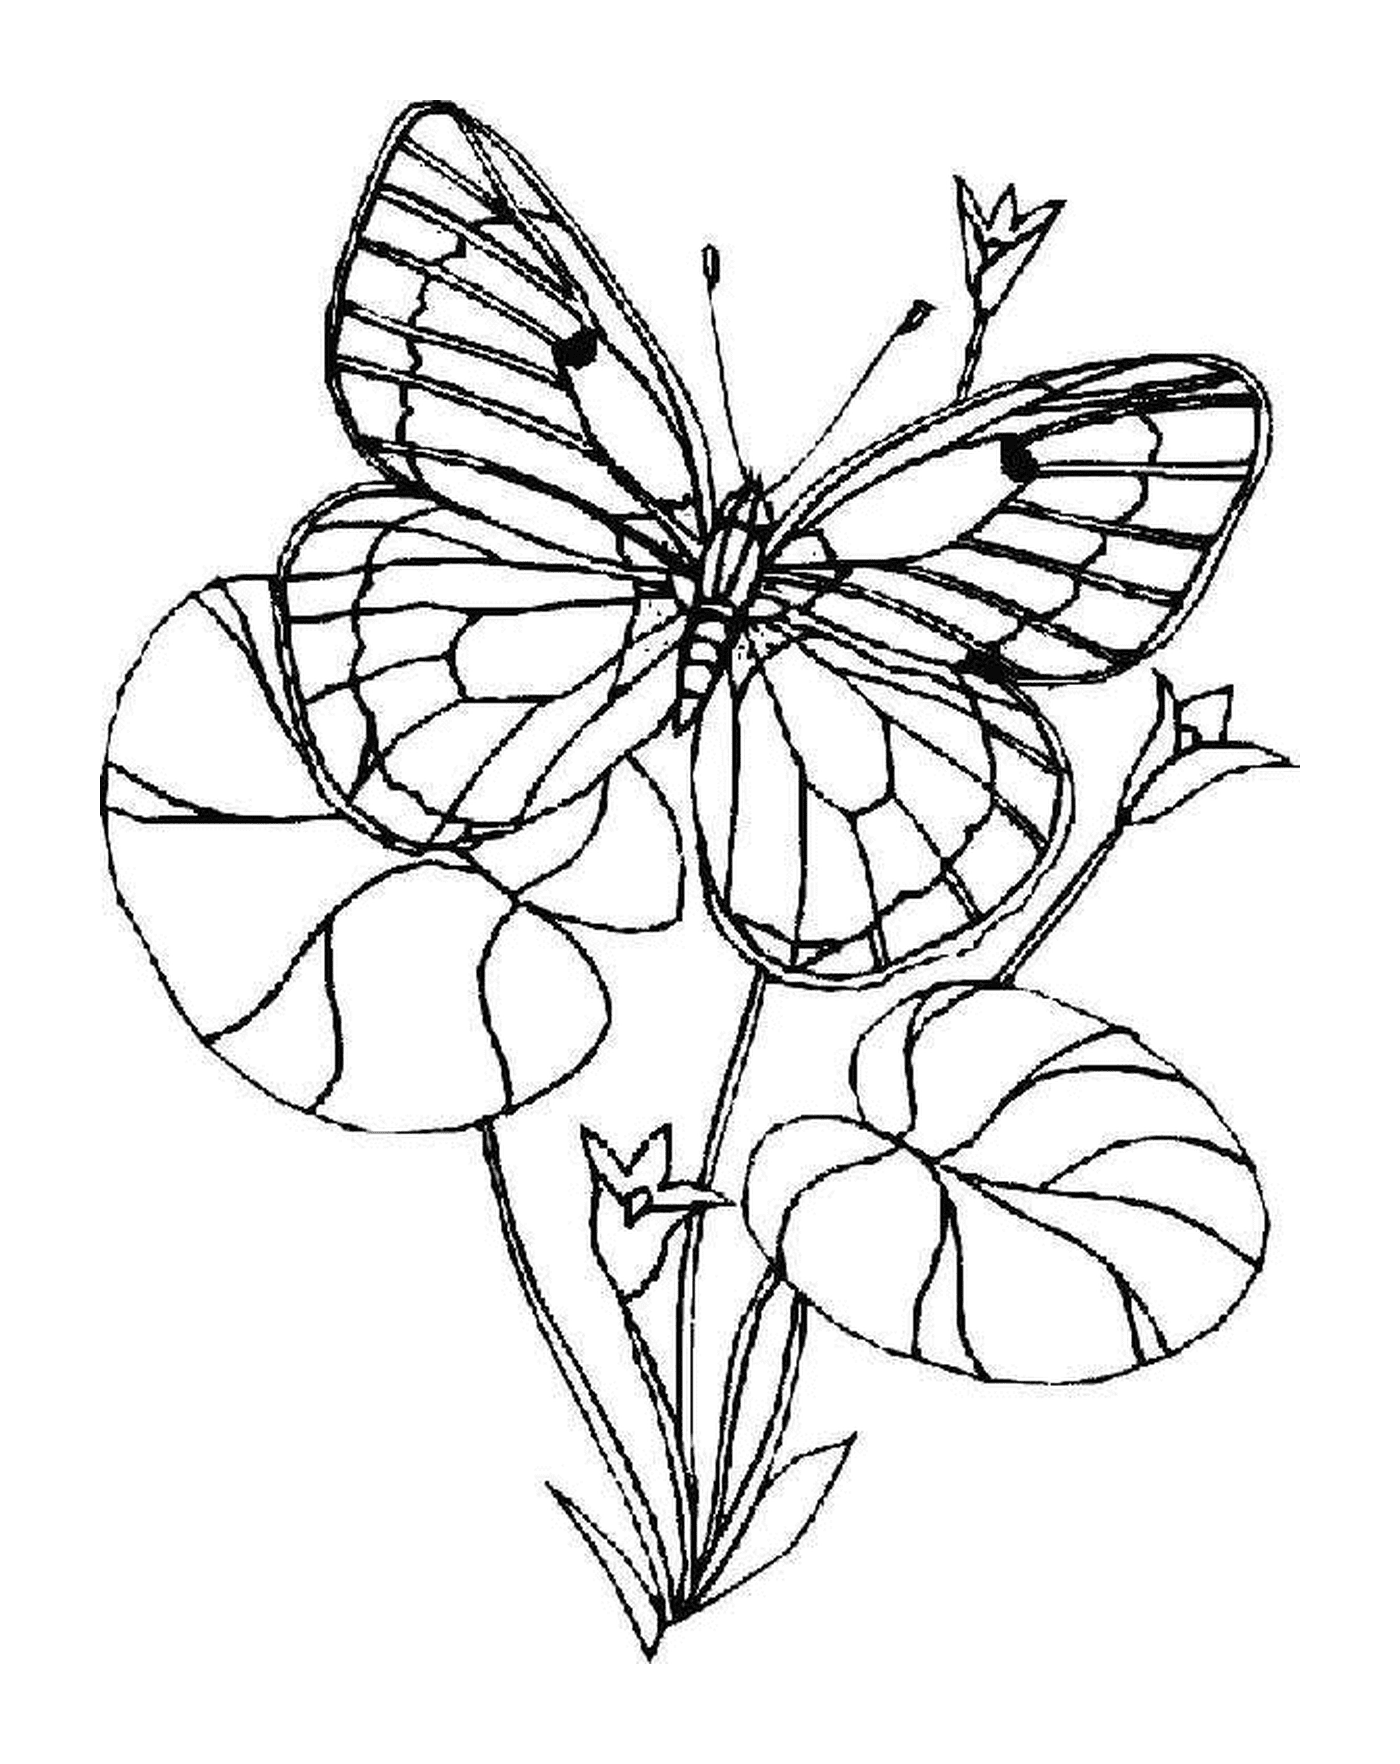 papillon et fleur